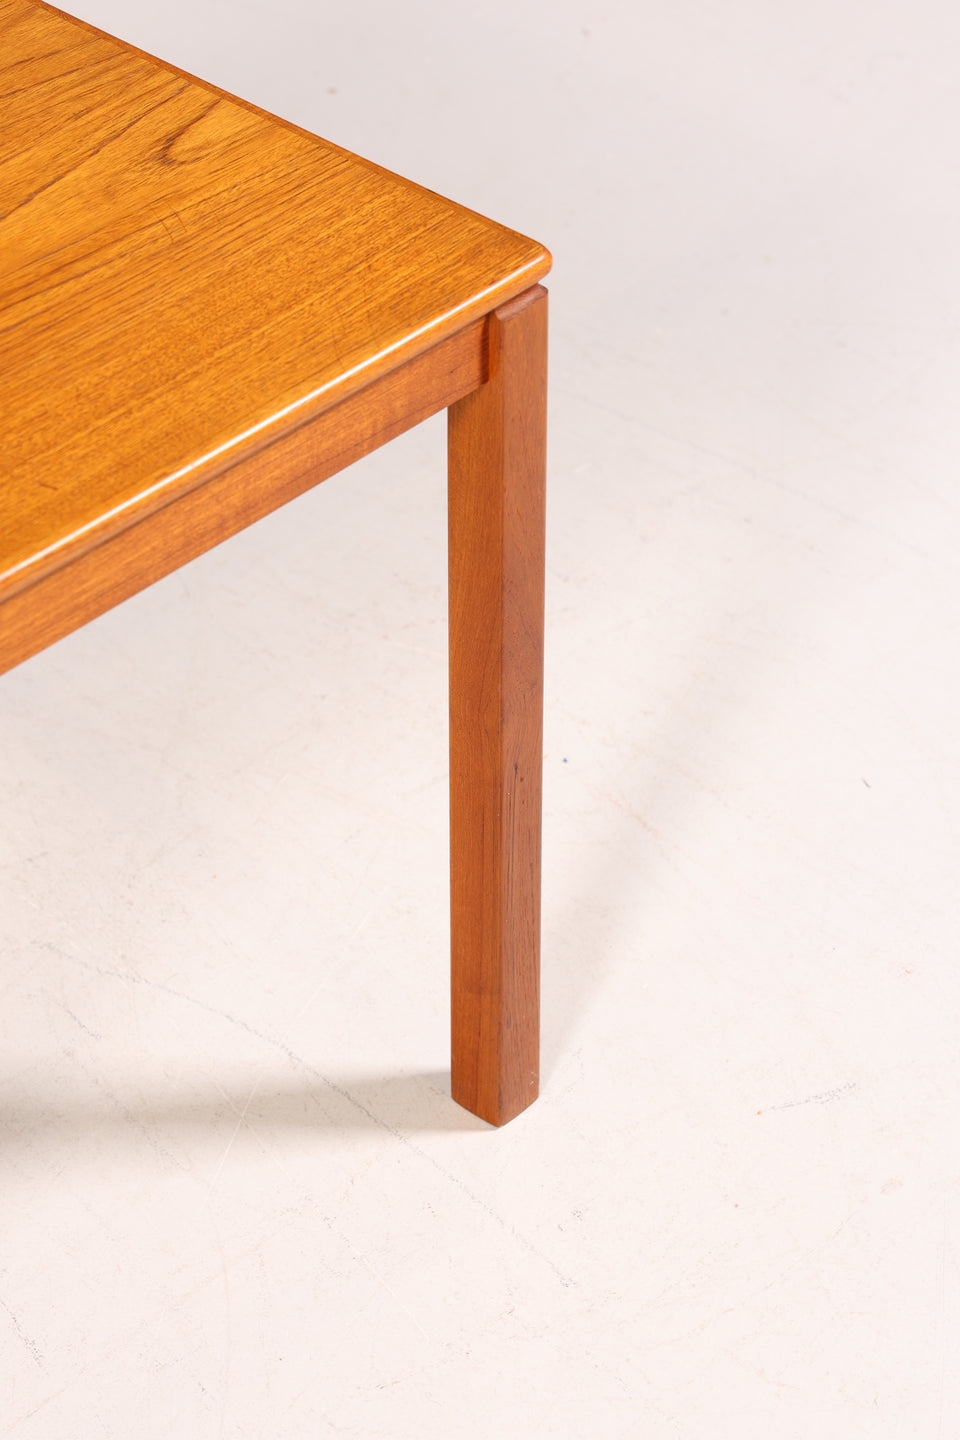 Wunderschöner Mid Century Tisch Danish Design Teak Holz Couchtisch Made in Denmark